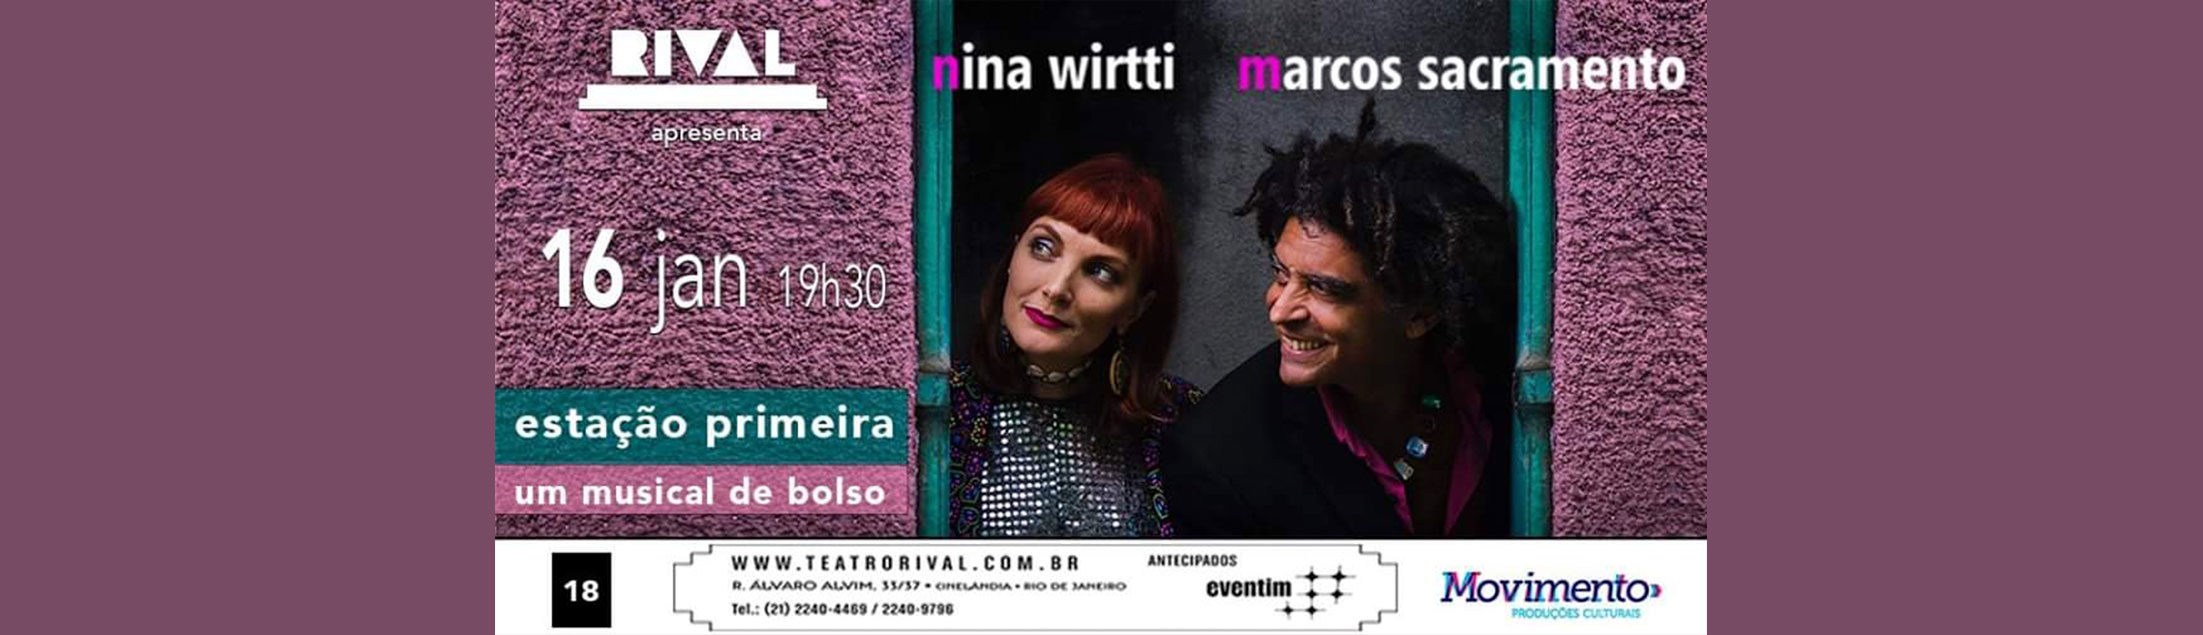 'ESTAÇÃO PRIMEIRA - Um musical de bolso’ por Marcos Sacramento e Nina Wirtti